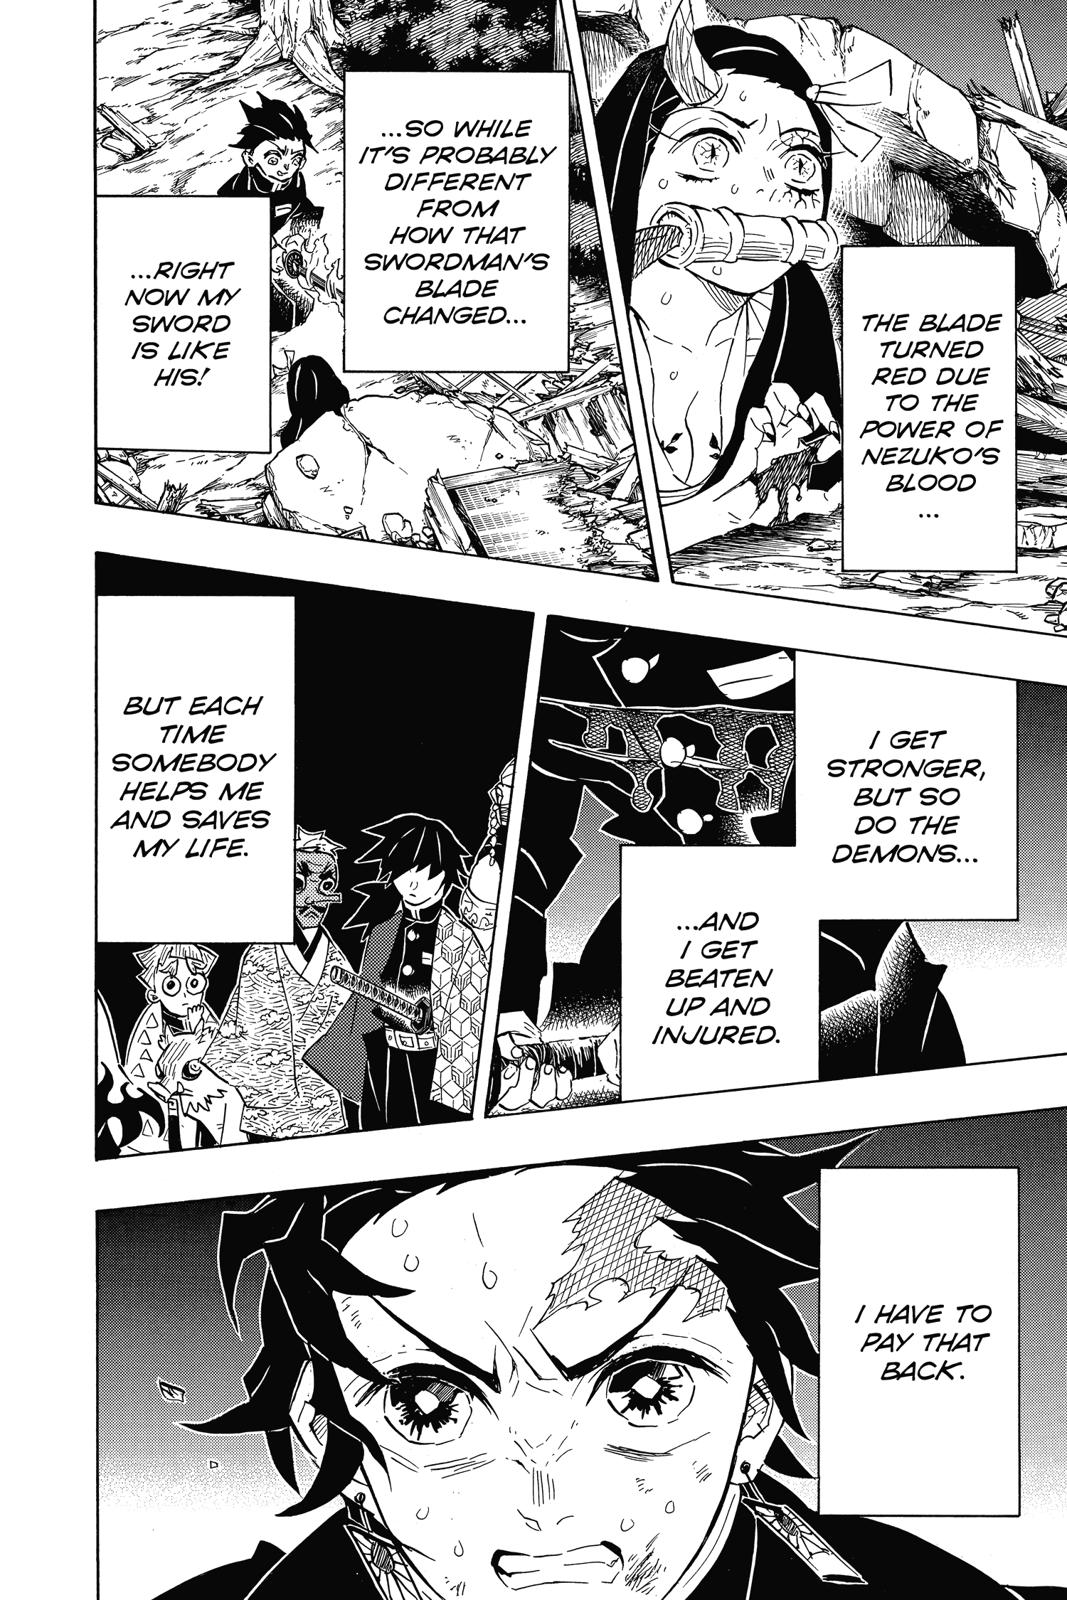 Demon Slayer Manga Manga Chapter - 113 - image 4